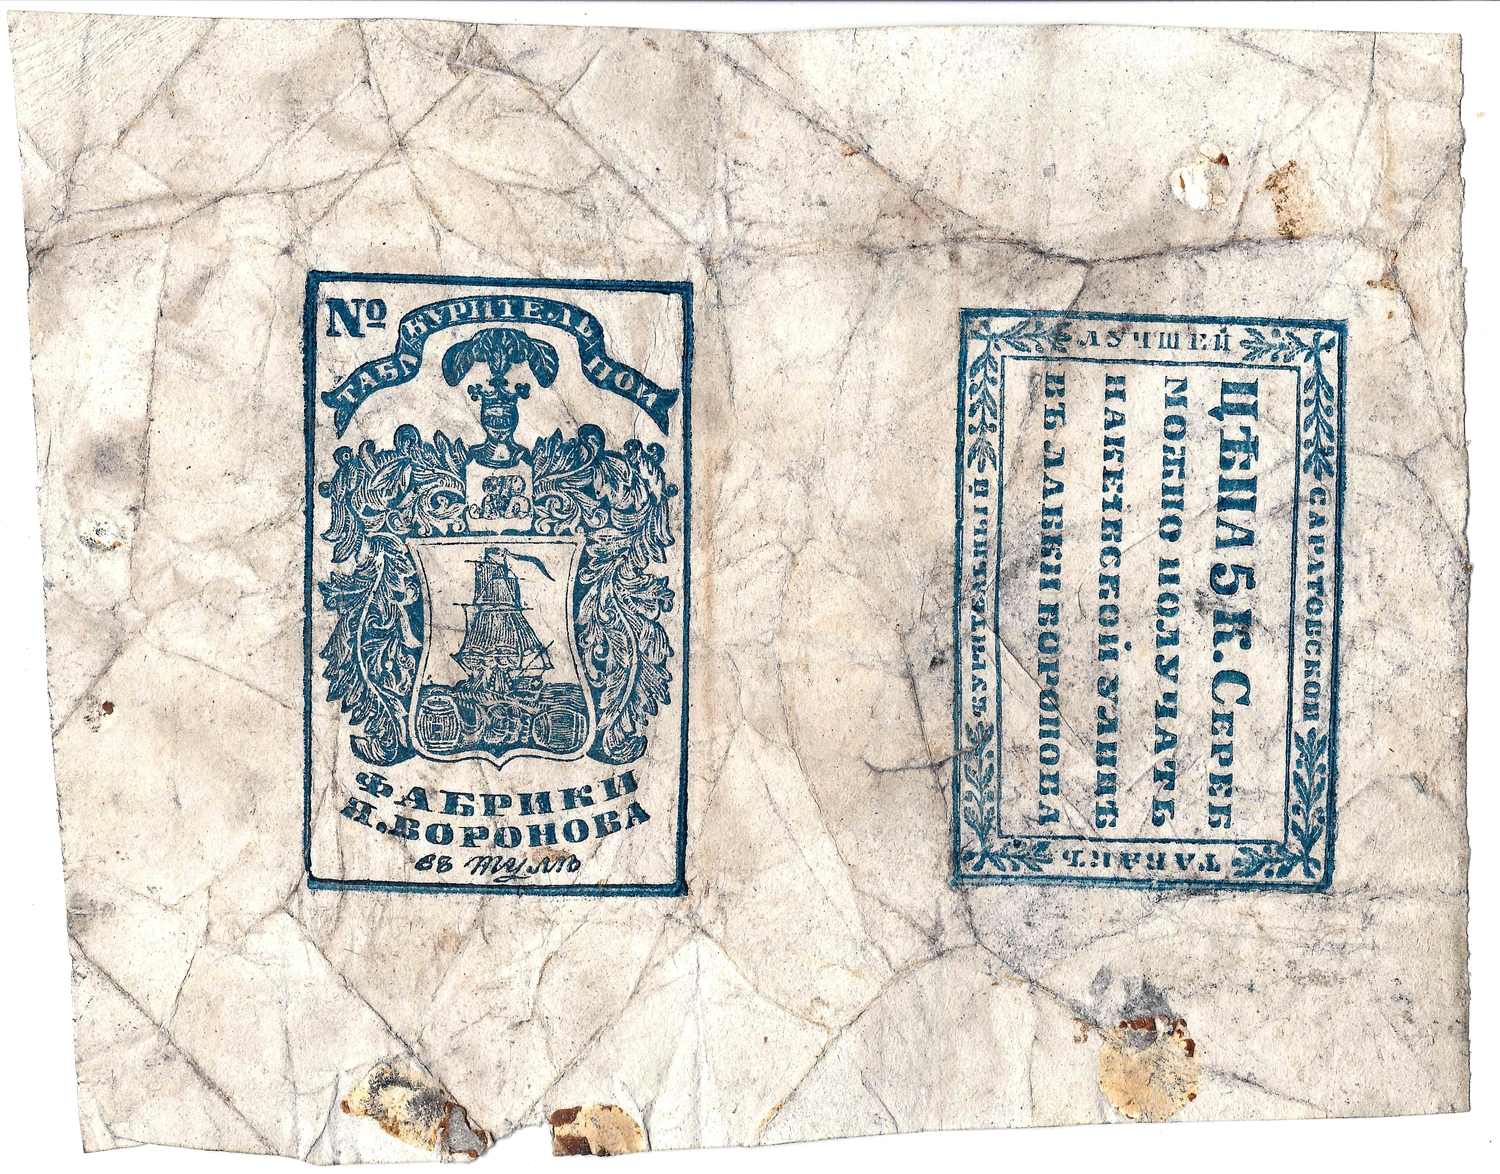 Коллекция упаковок (листы для фасовки) табака и папирос. 25 листов. Россия, СССР, 1840-е – 1930-е годы.